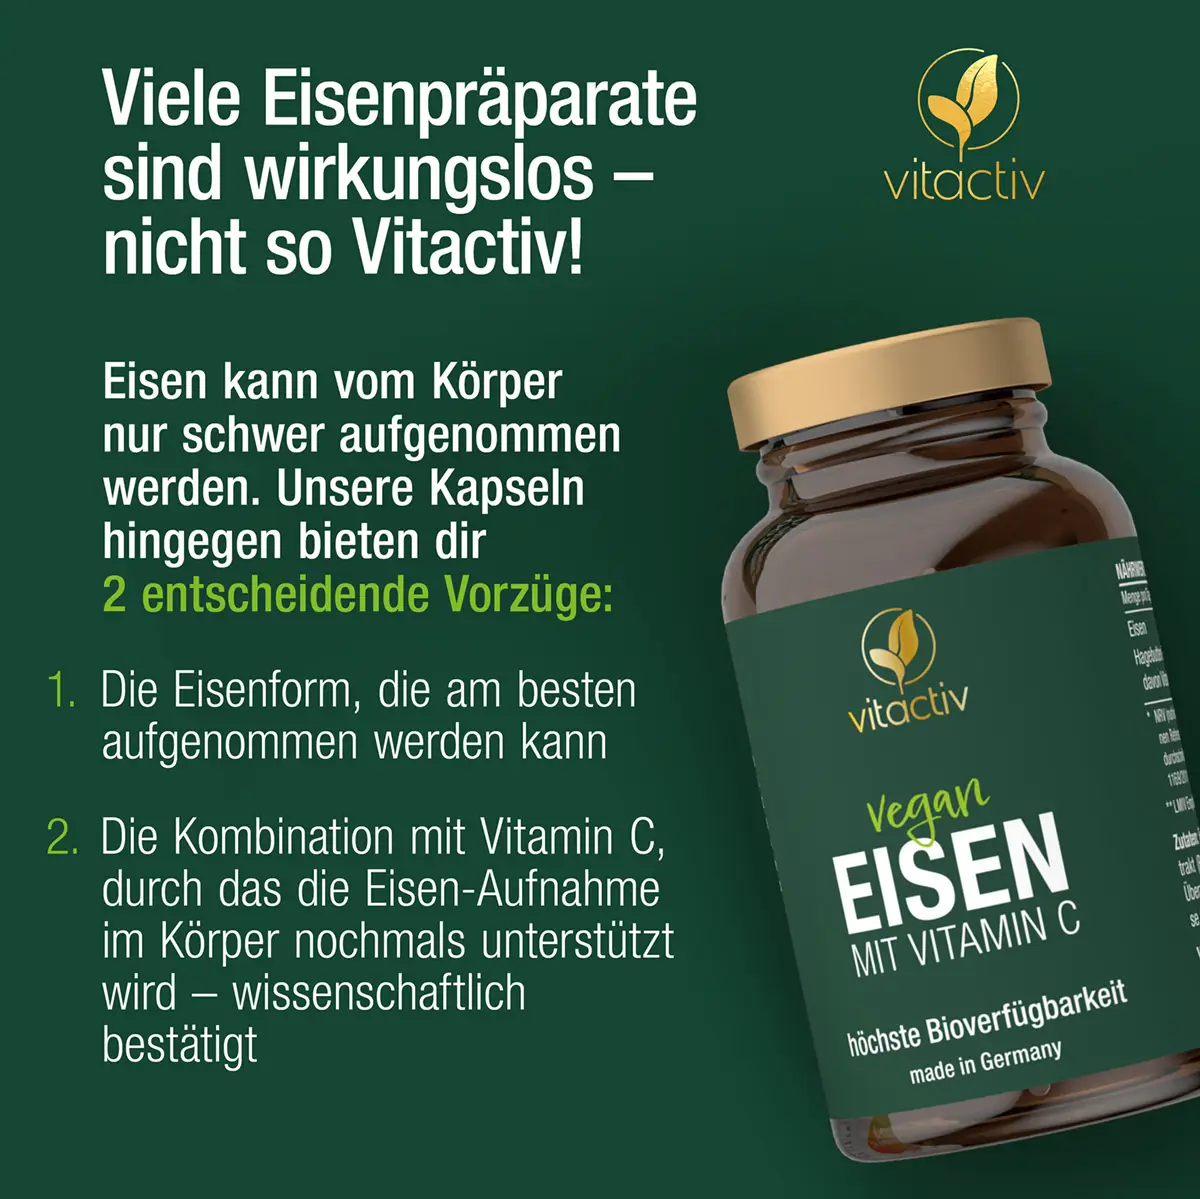 A821_Eisen-mit-Vitamin-C-18839884-04-shop1-1200px_1920x1920